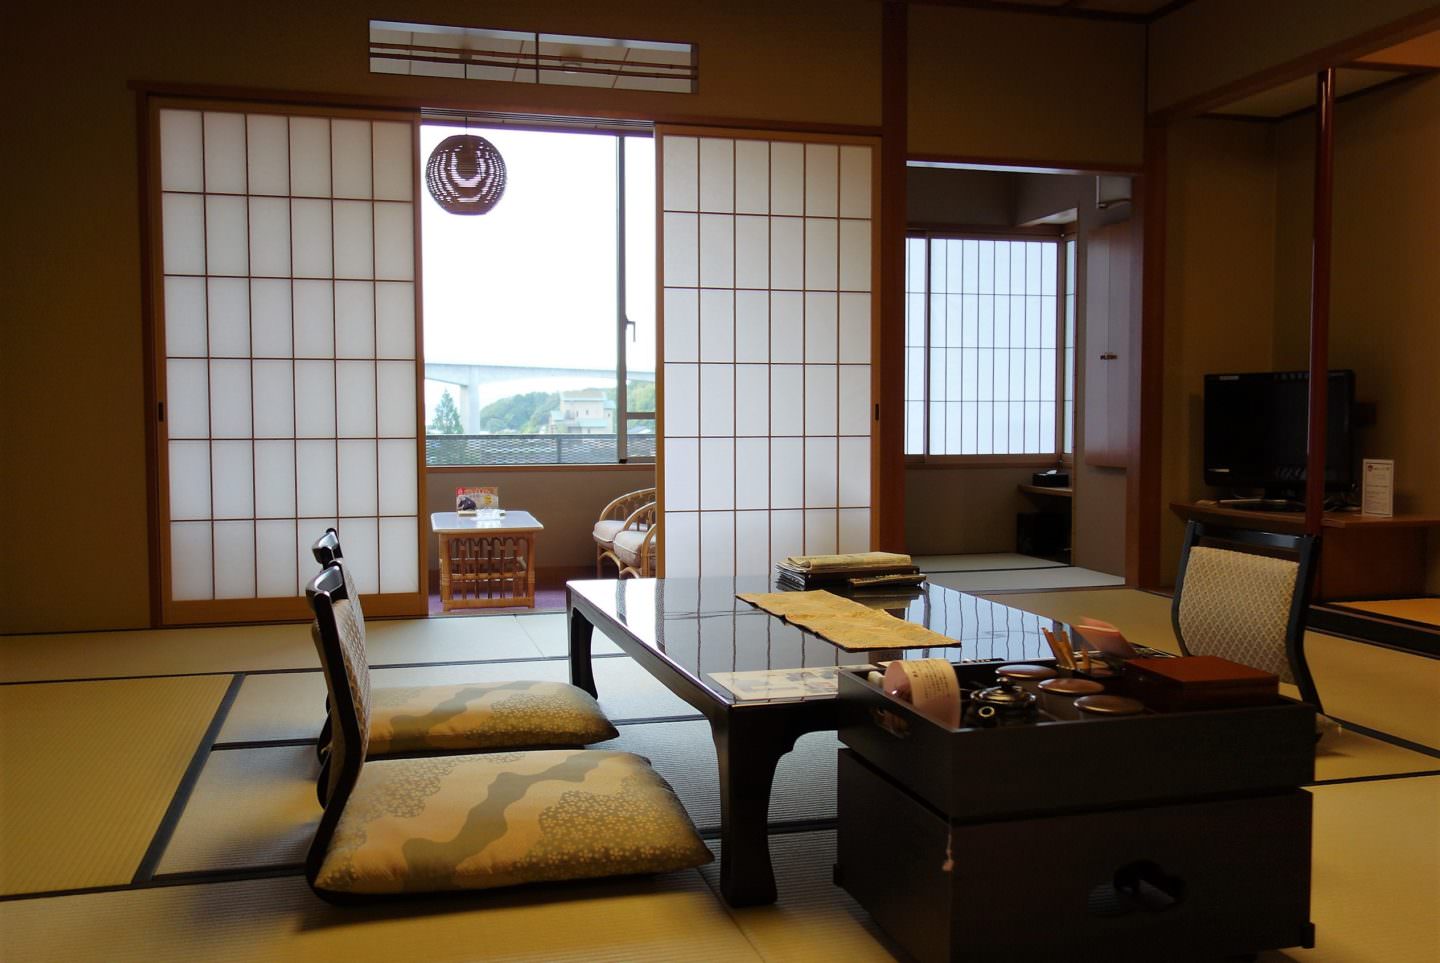 A room at “Kasuien Minami” at Tamatsukuri Onsen hot spring in Matsue, Shimane Prefecture.